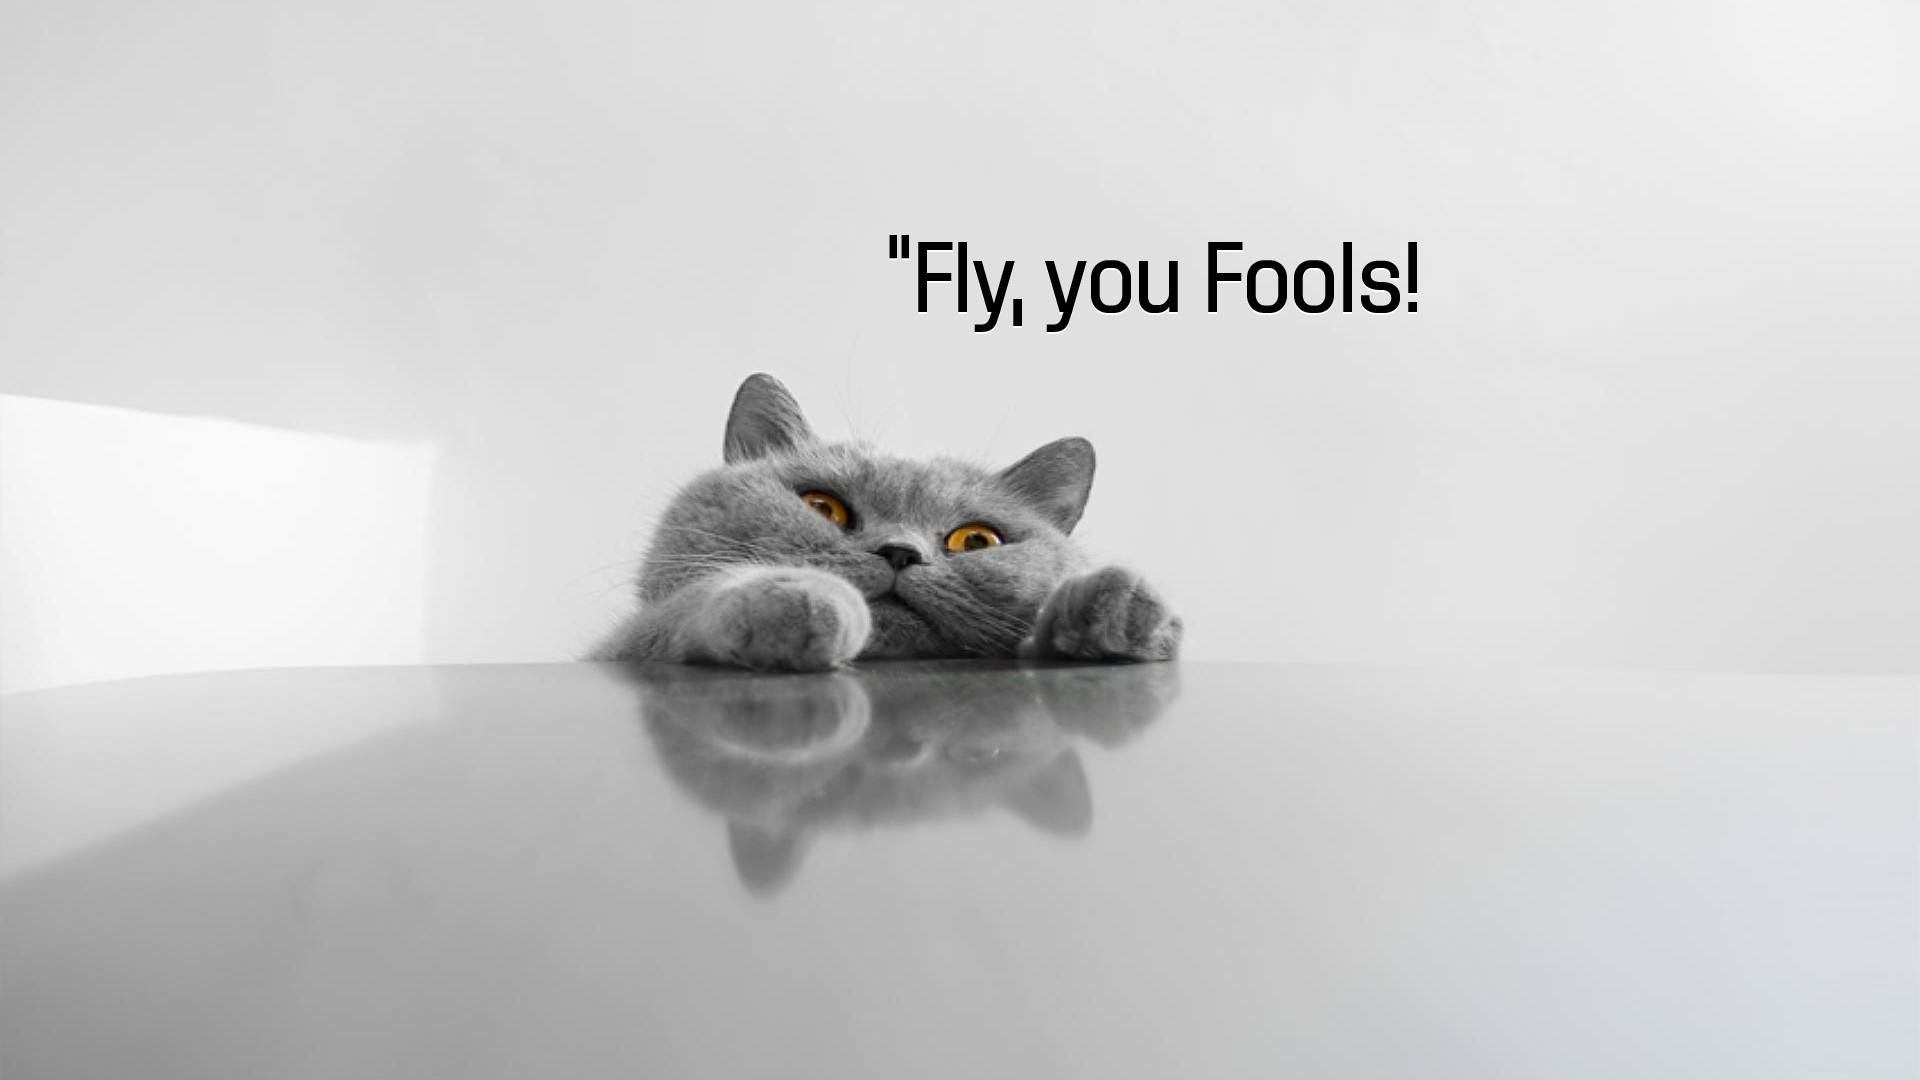 fly-you-fools-funny-full-hd-wallpaper-ca